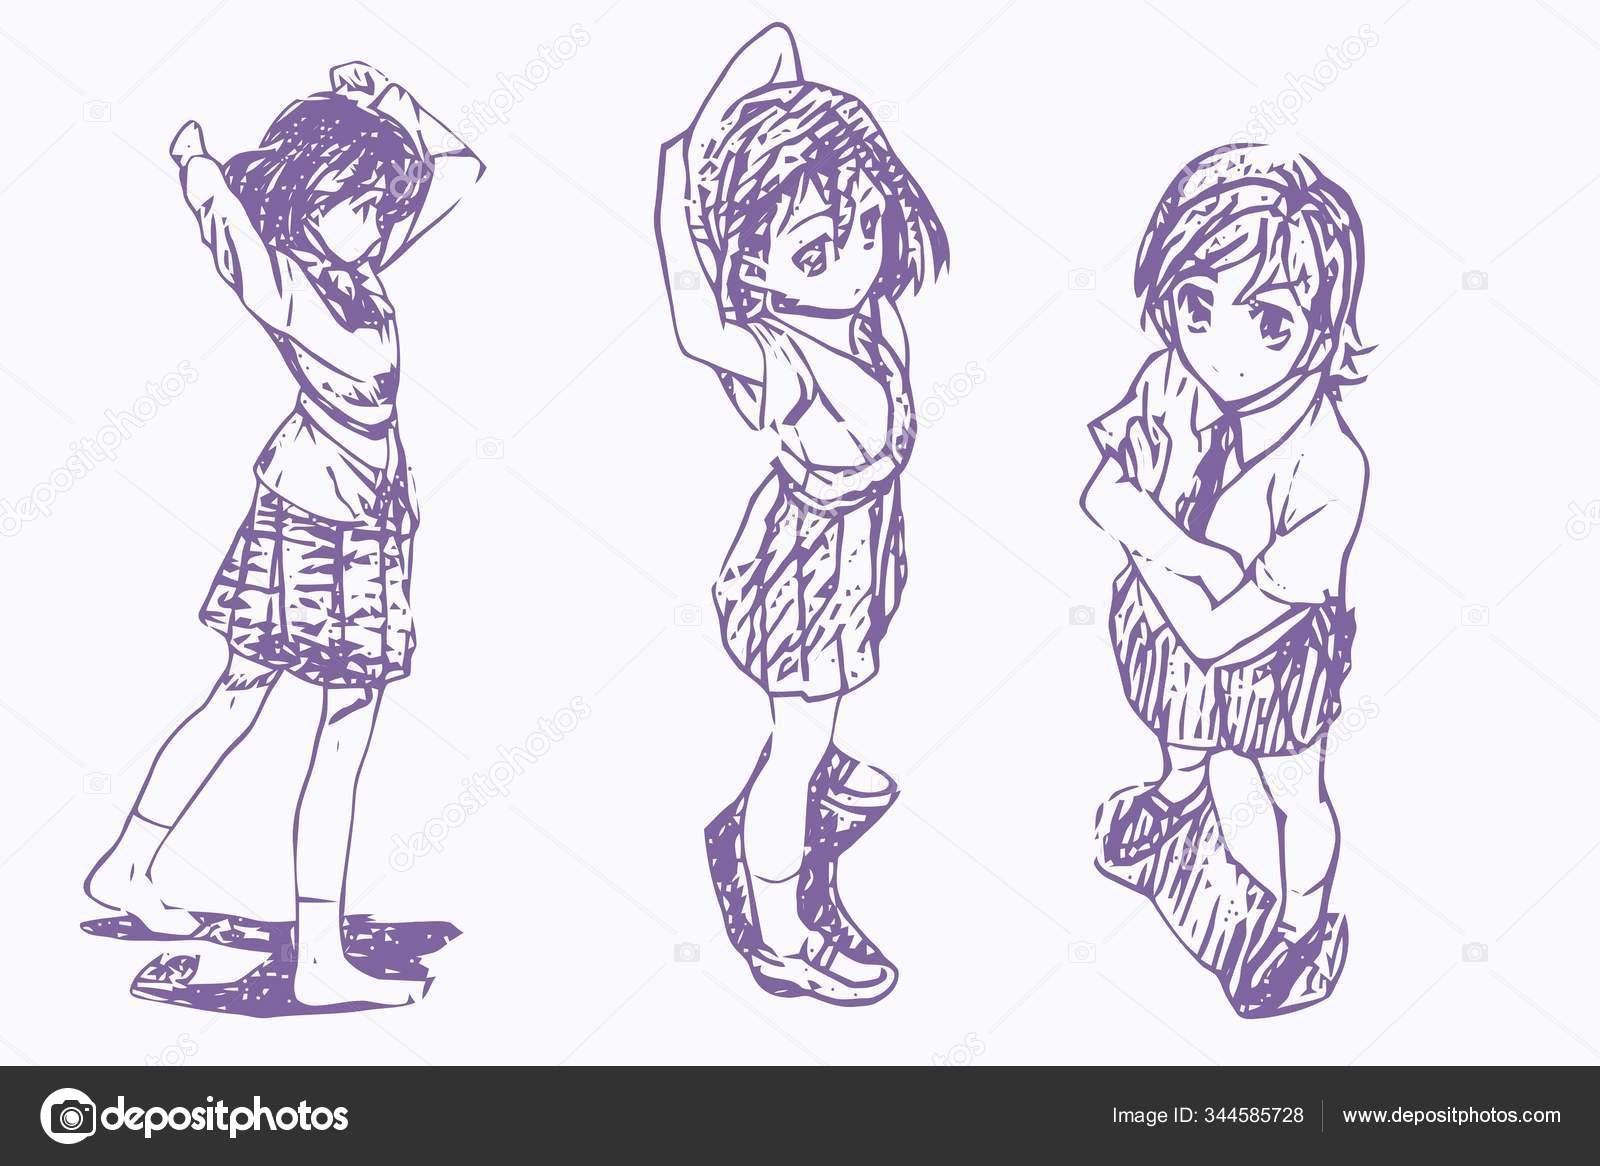 anime pose reference drawingTikTok Search